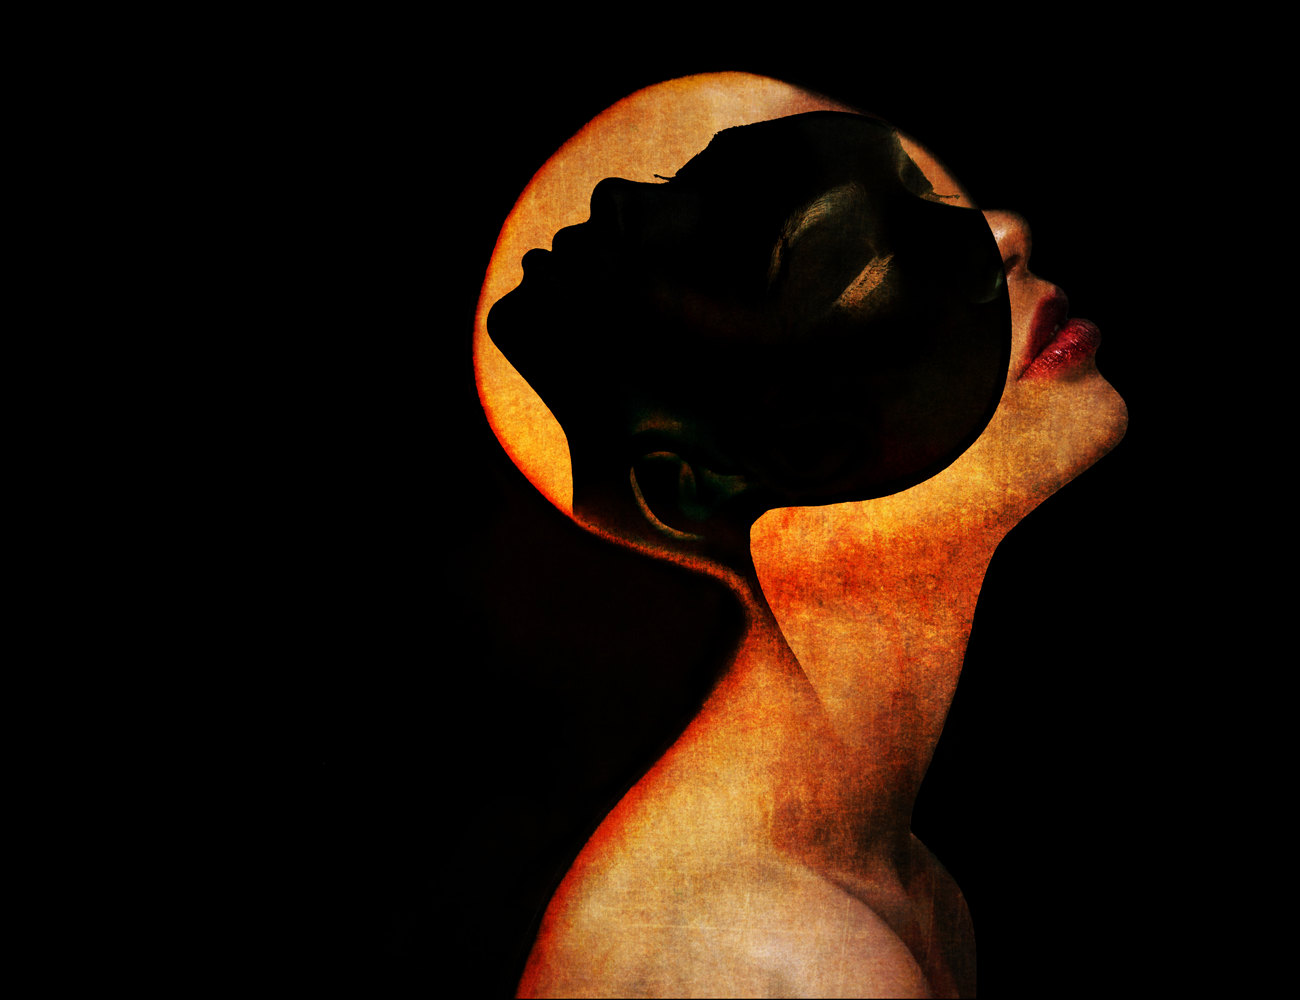 Head of woman wearing mask